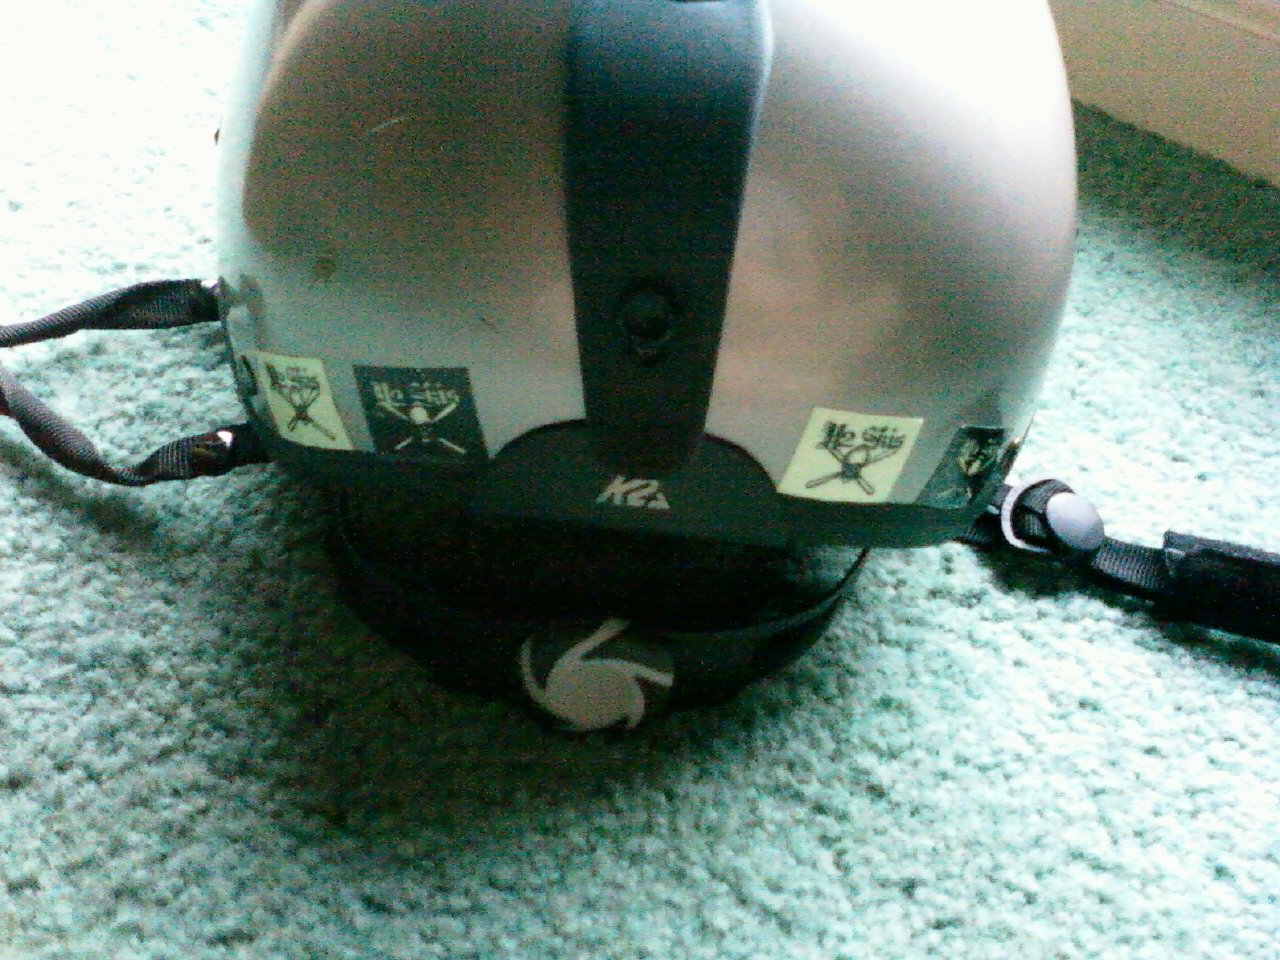 K2 helment